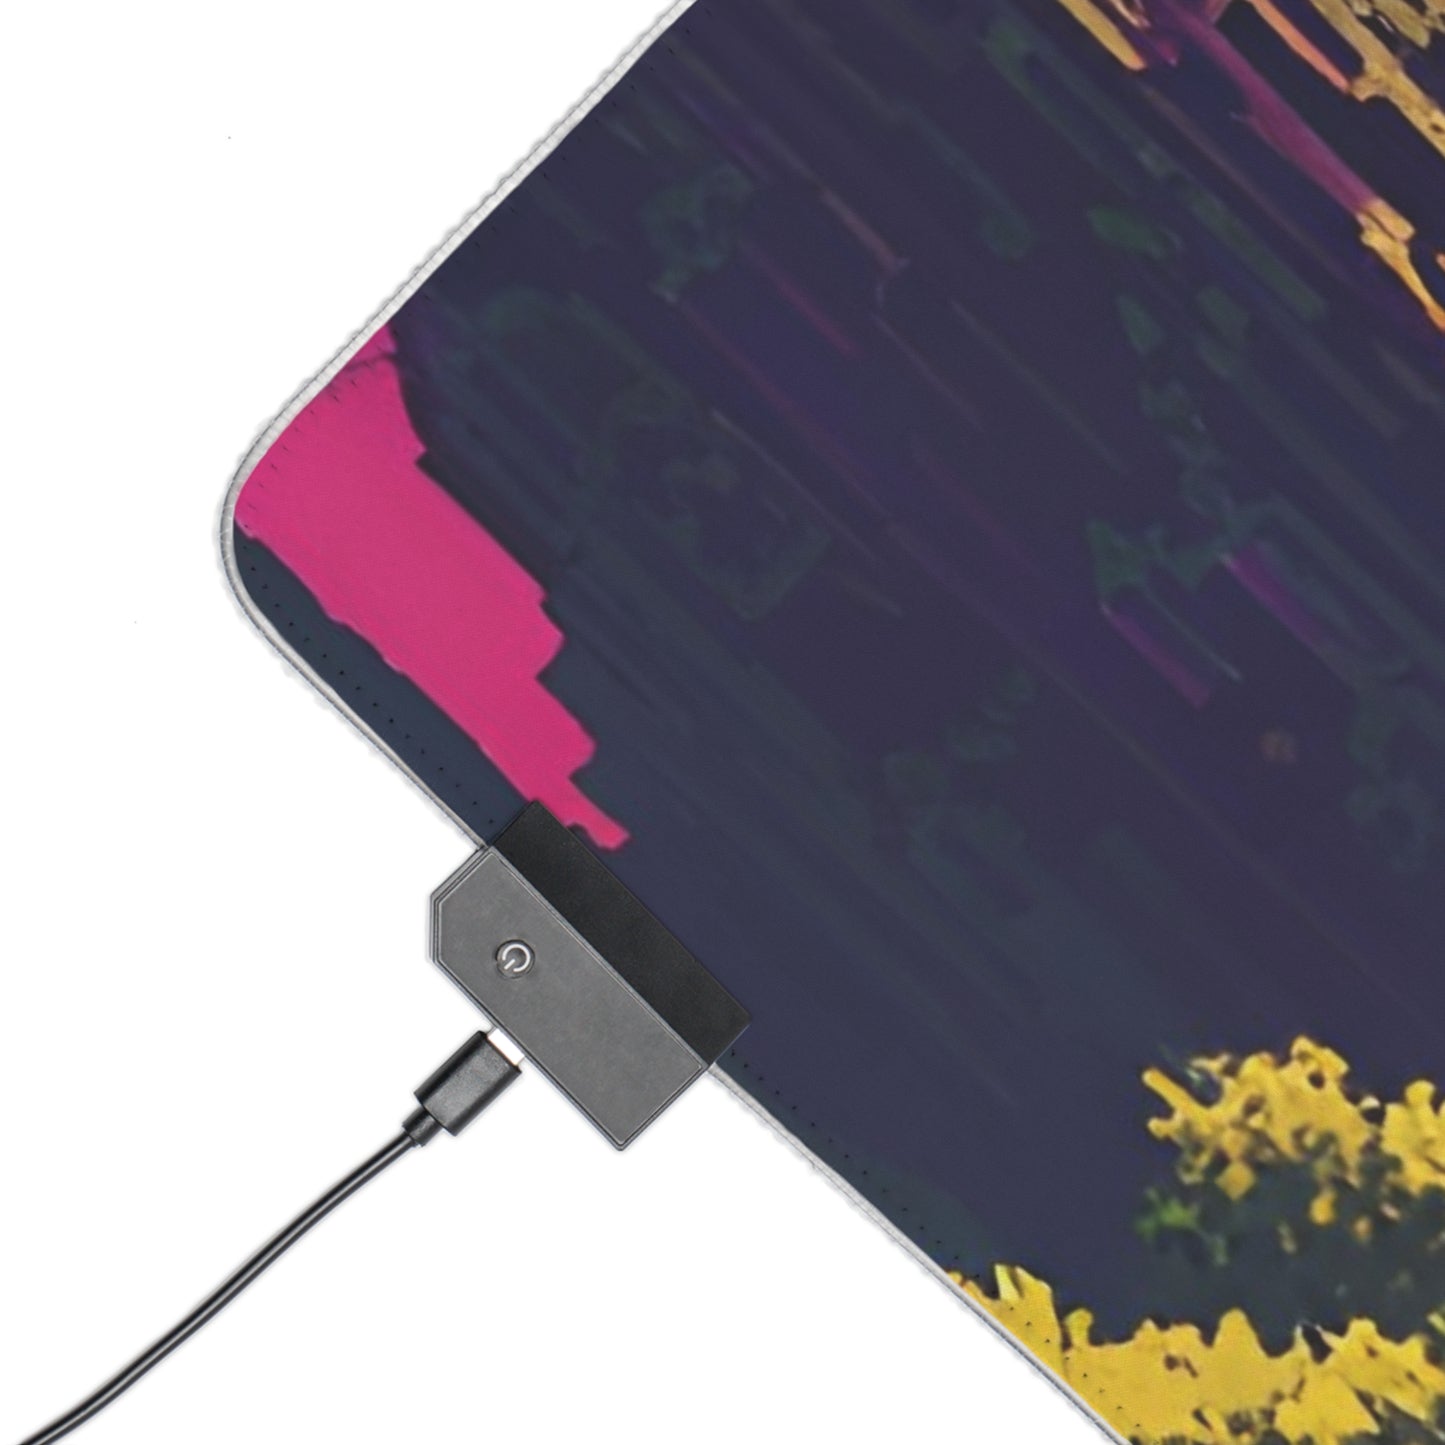 Pixel adventurer landscape LED Gaming Mouse Pad